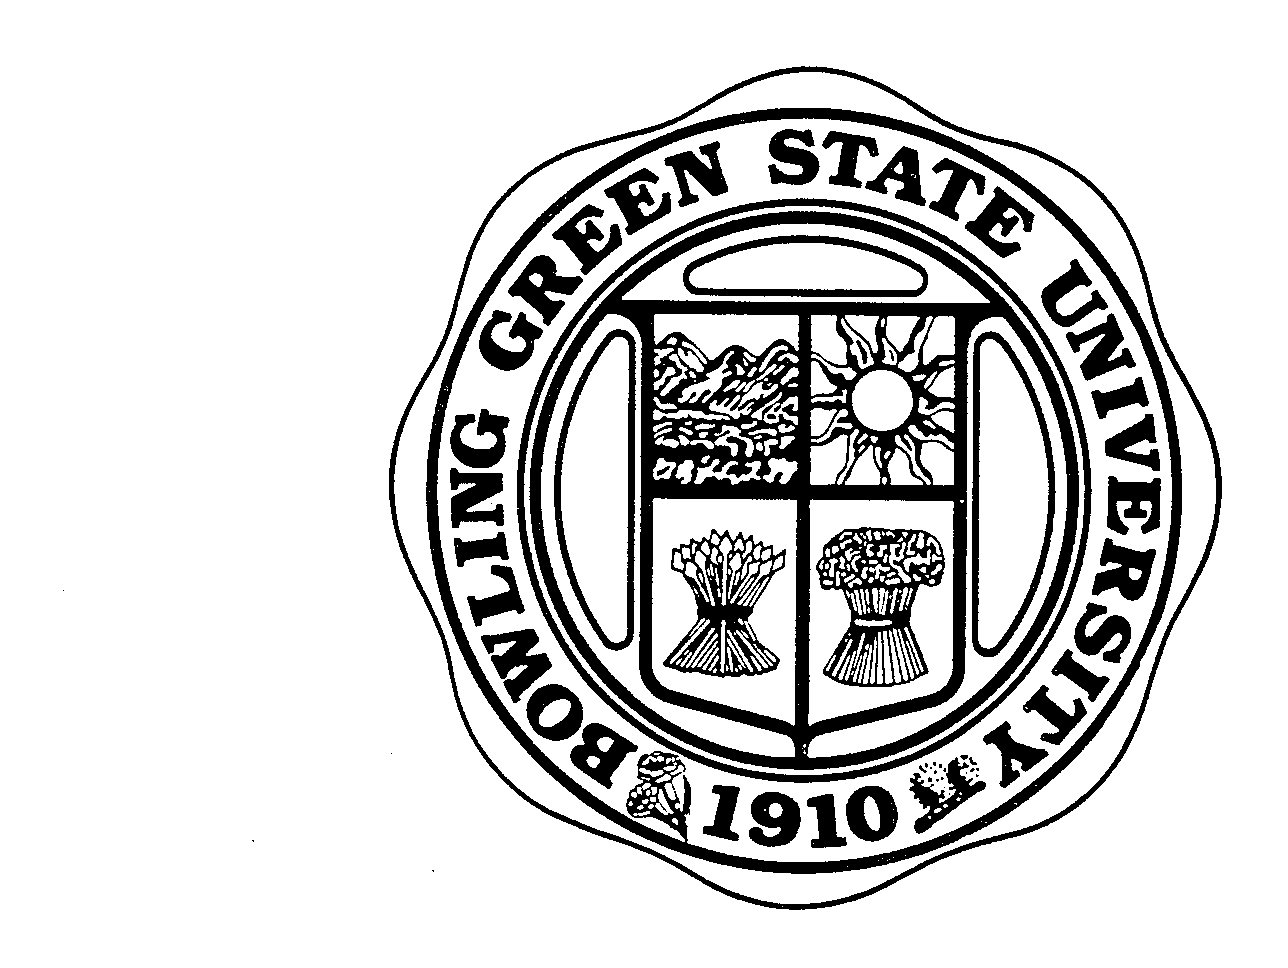 BOWLING GREEN STATE UNIVERSITY 1910